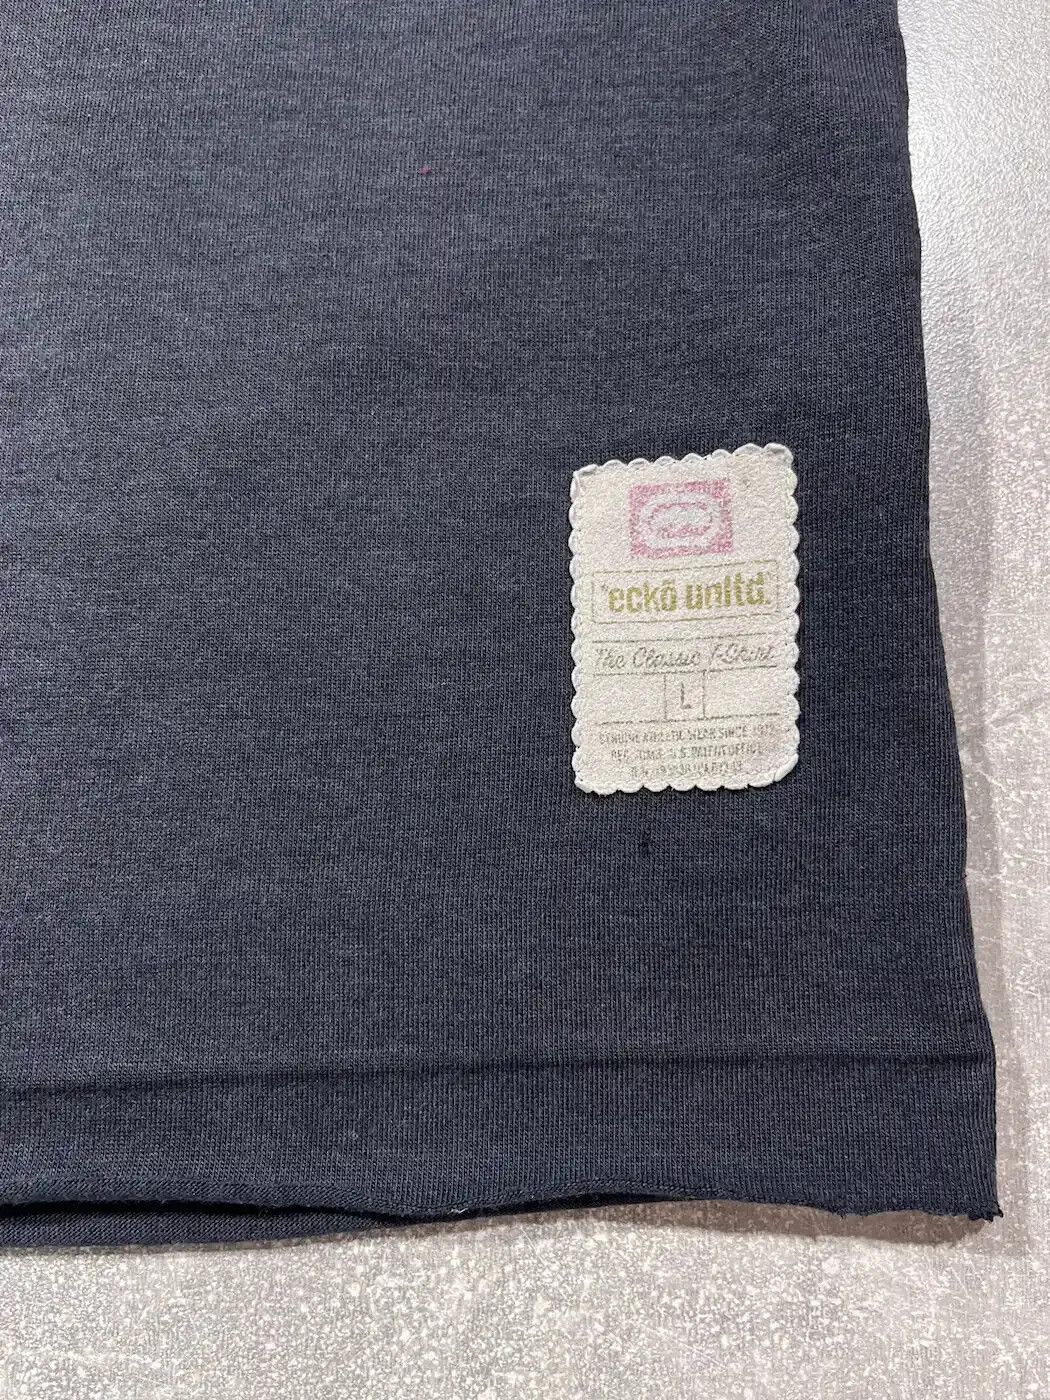 Vintage Rare Vintage Ecko Unlimited T-Shirt Y2K Japan Style Size US M / EU 48-50 / 2 - 8 Thumbnail